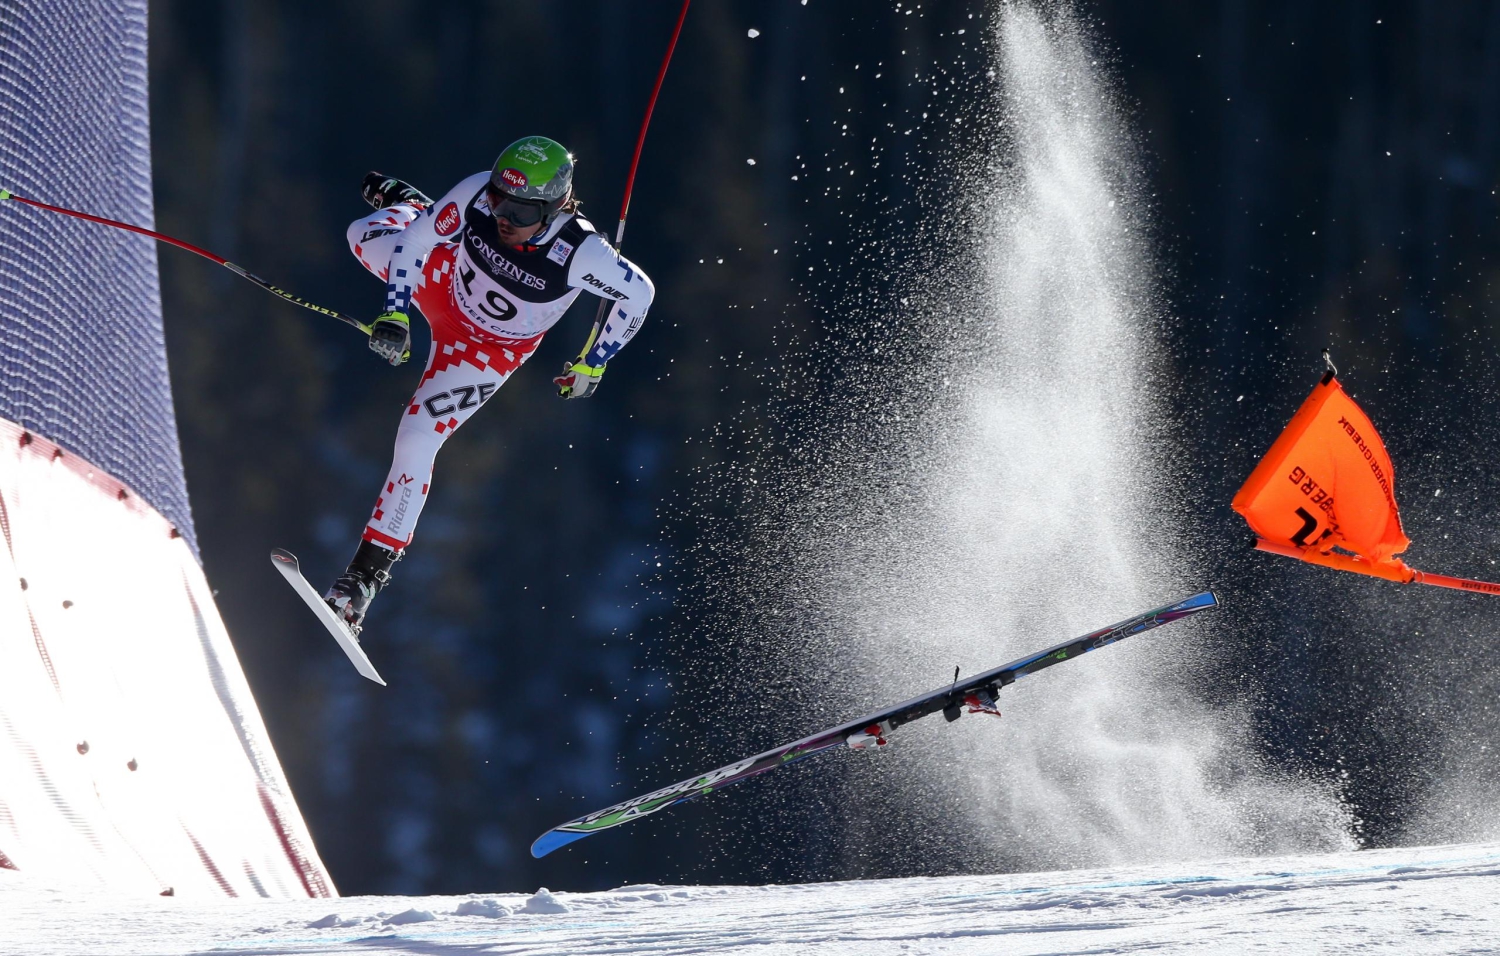 La caída de un esquiador, World Press Photo 2016 en ‘Deportes’